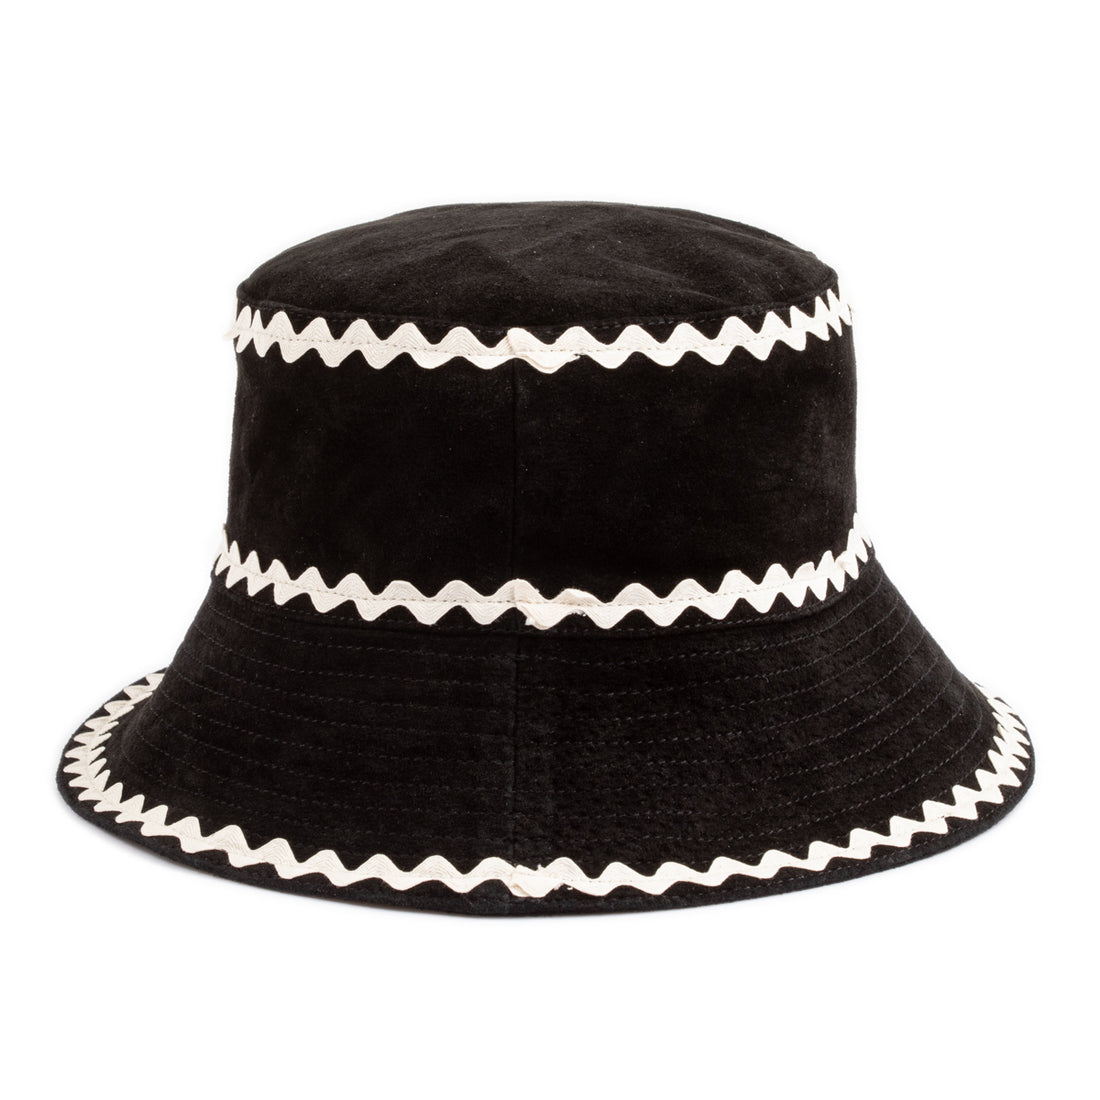 Bode Suede Rickrack Hat - White/Black - Standard & Strange